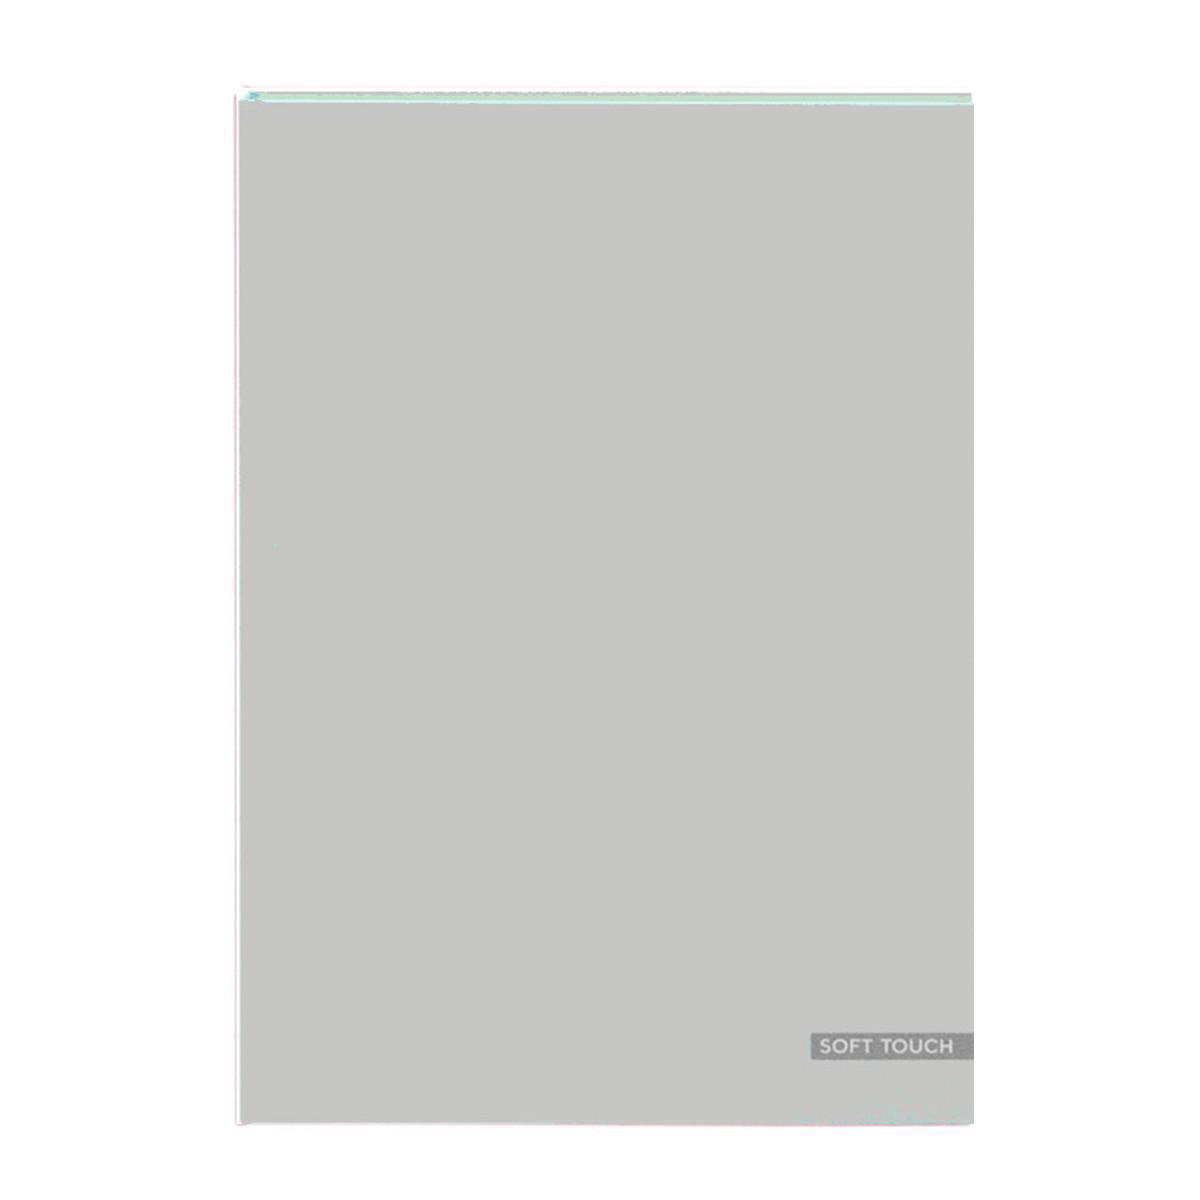 Groot notitieboek A4 - Blanco inhoud - Met luxe harde kaft - Zachtgrijs - Gratis verzonden